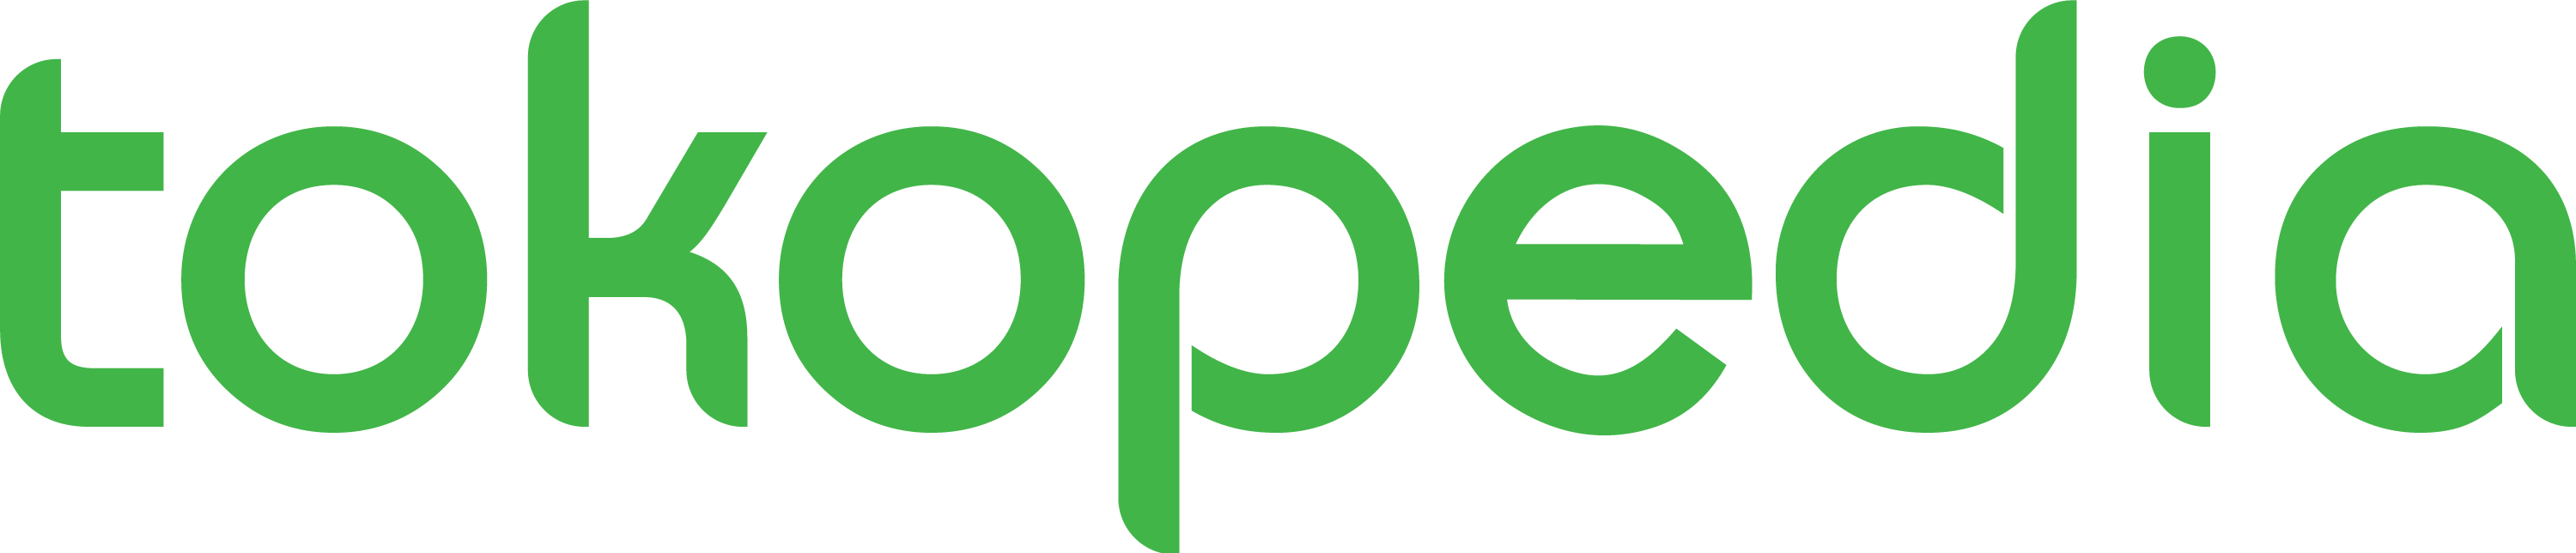 Tokopedia Logo PNG